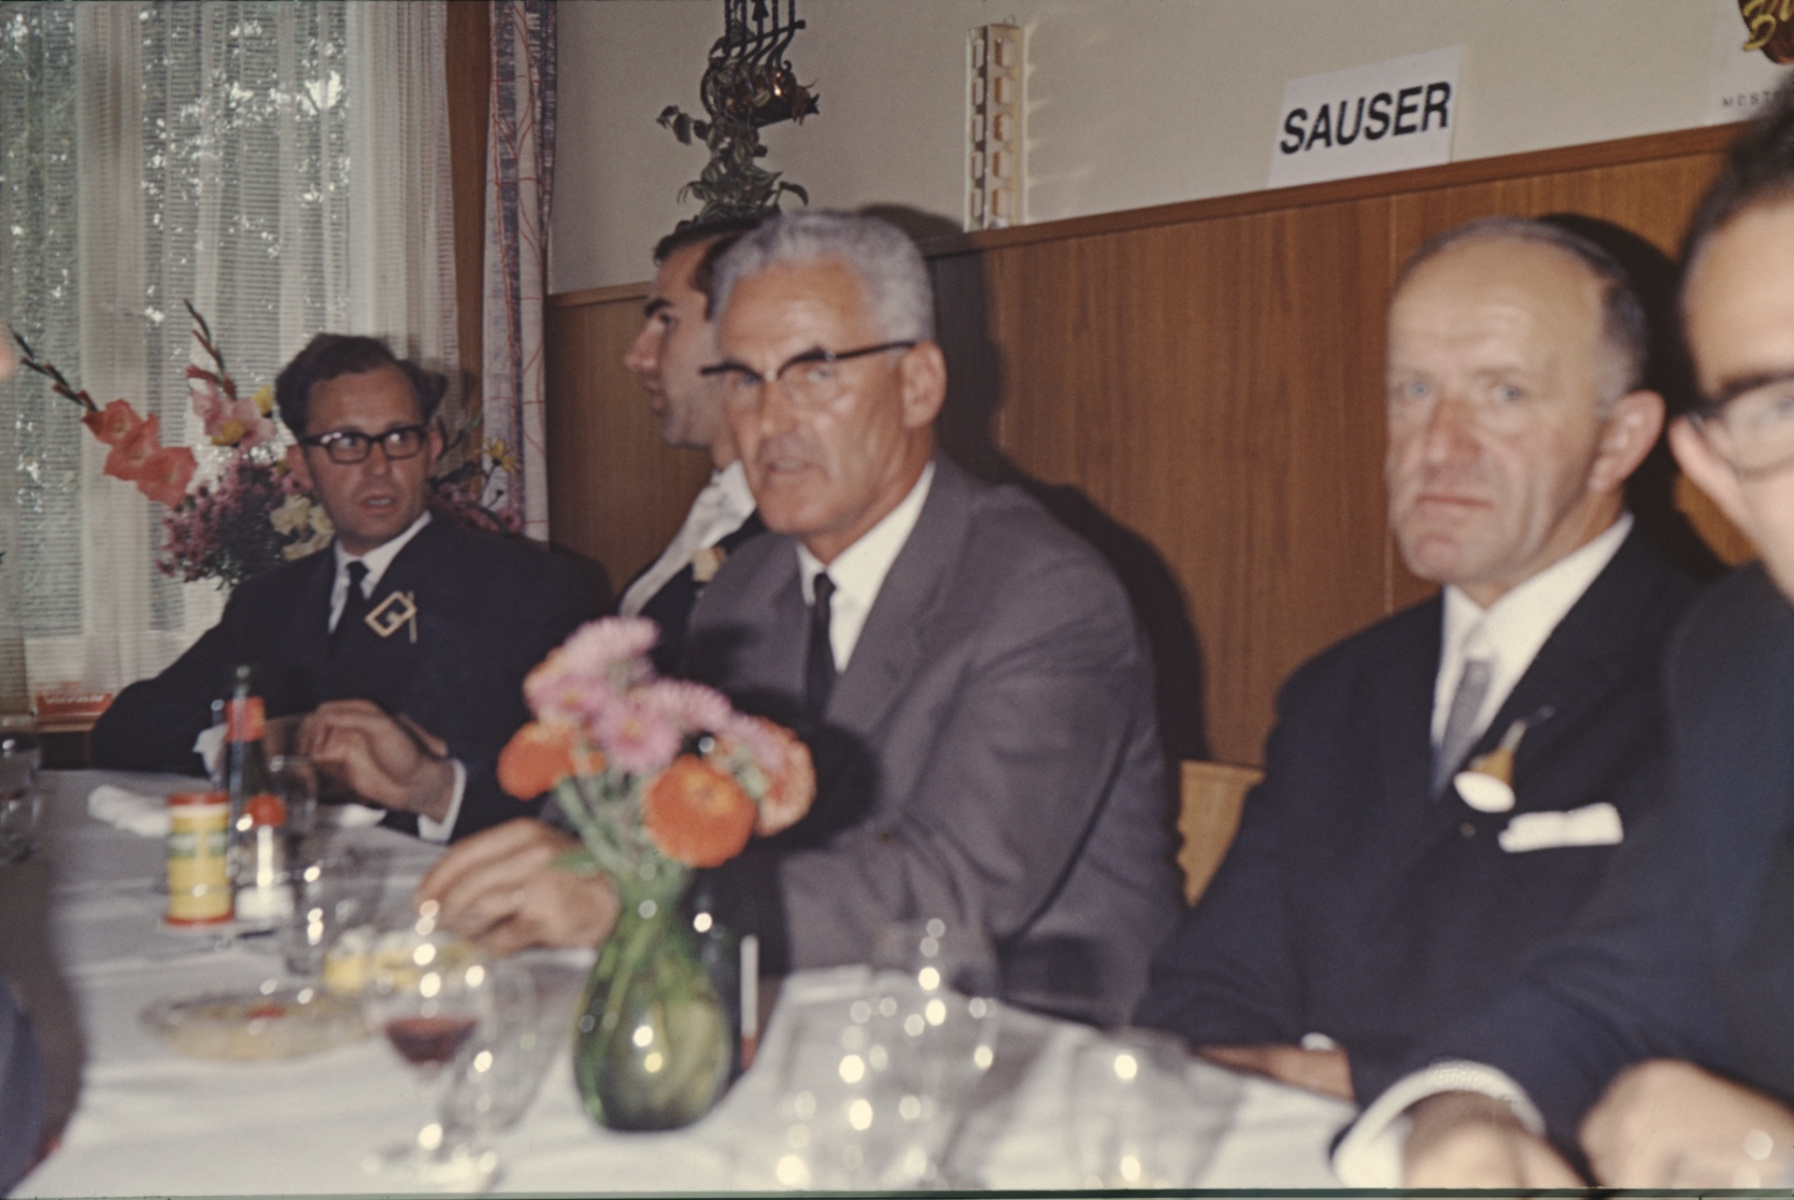 Schulhaus Adetswil Einweihung, Hugo Grimmer, G. Keller, Hollenweger (Visitator), Ernst Stutz GdePräsi (1970-1971)